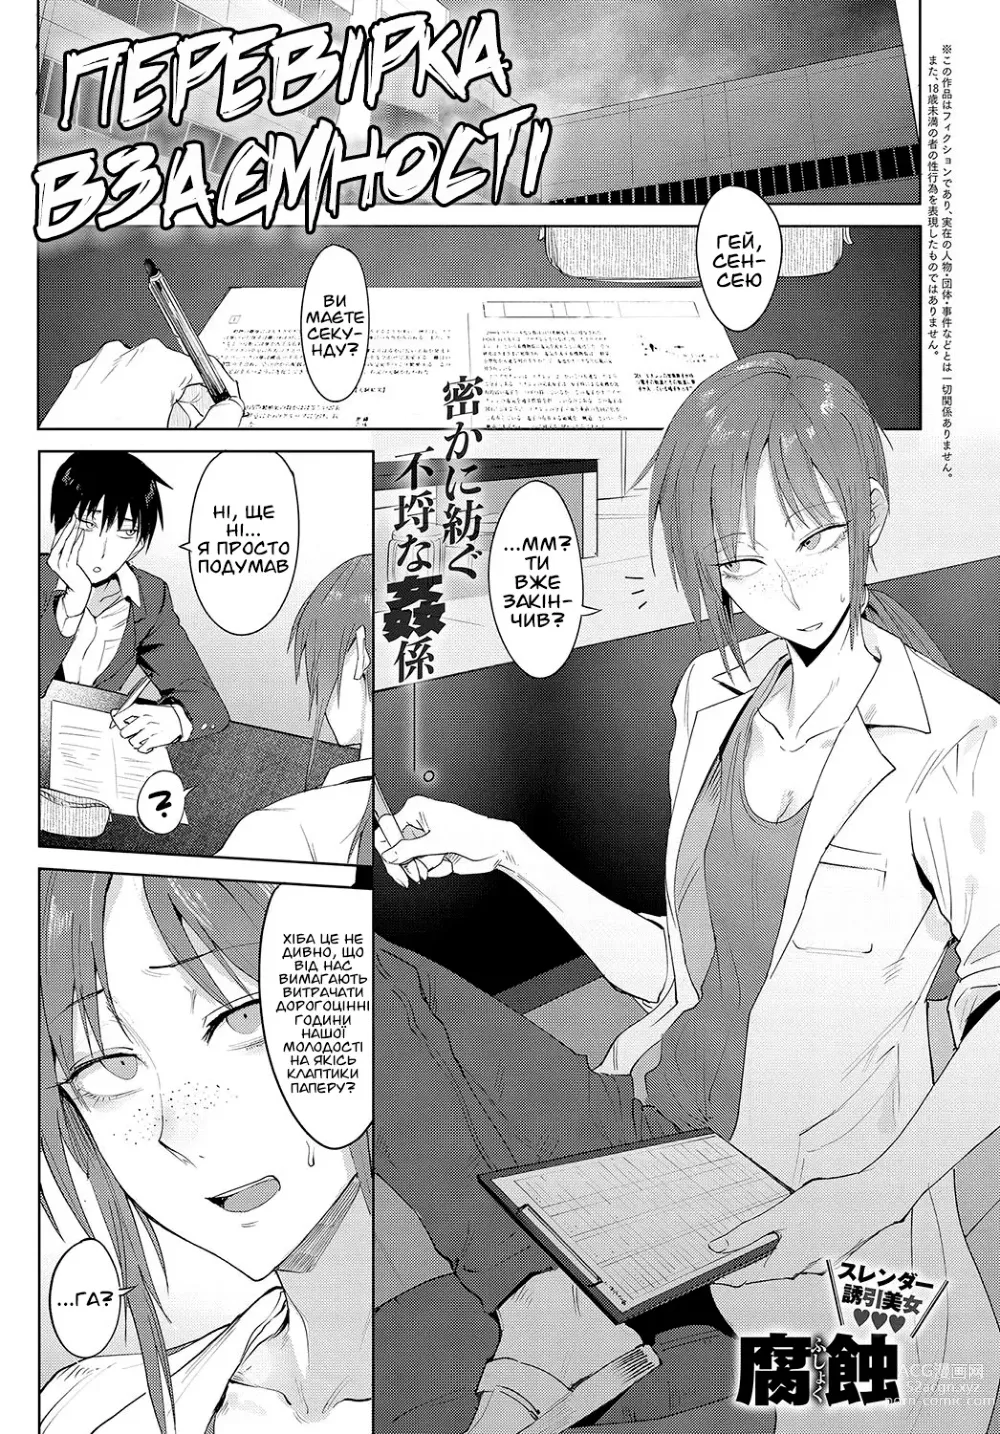 Page 1 of manga Перевірка Взаємності